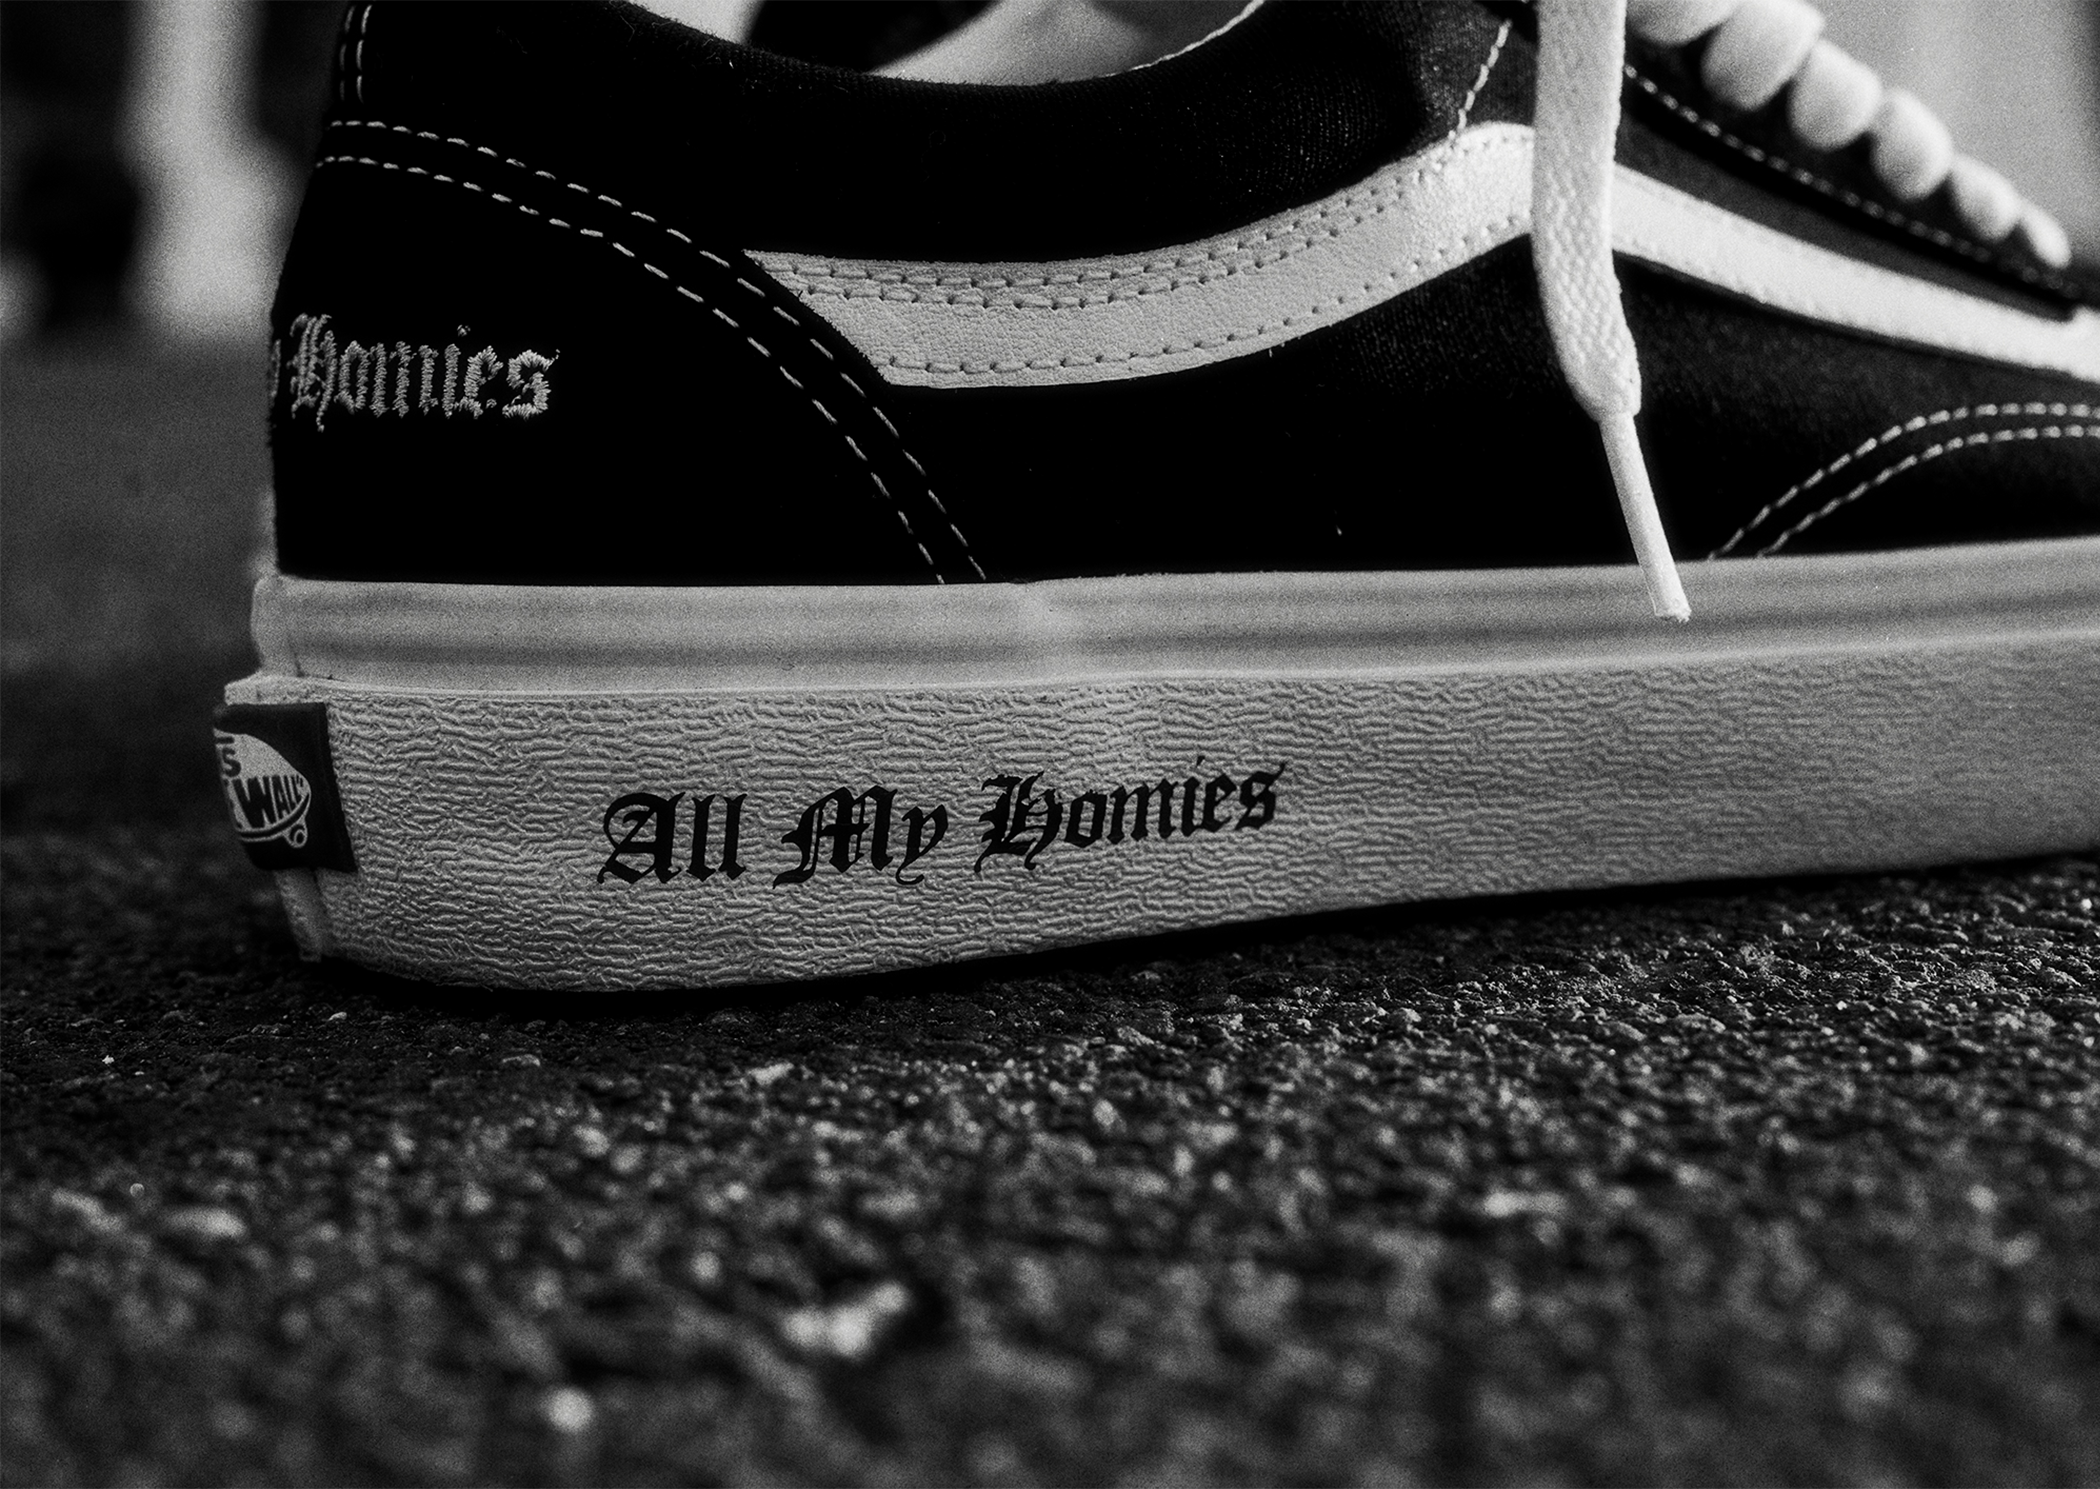 28 All My Homies × Vans Slip-On \